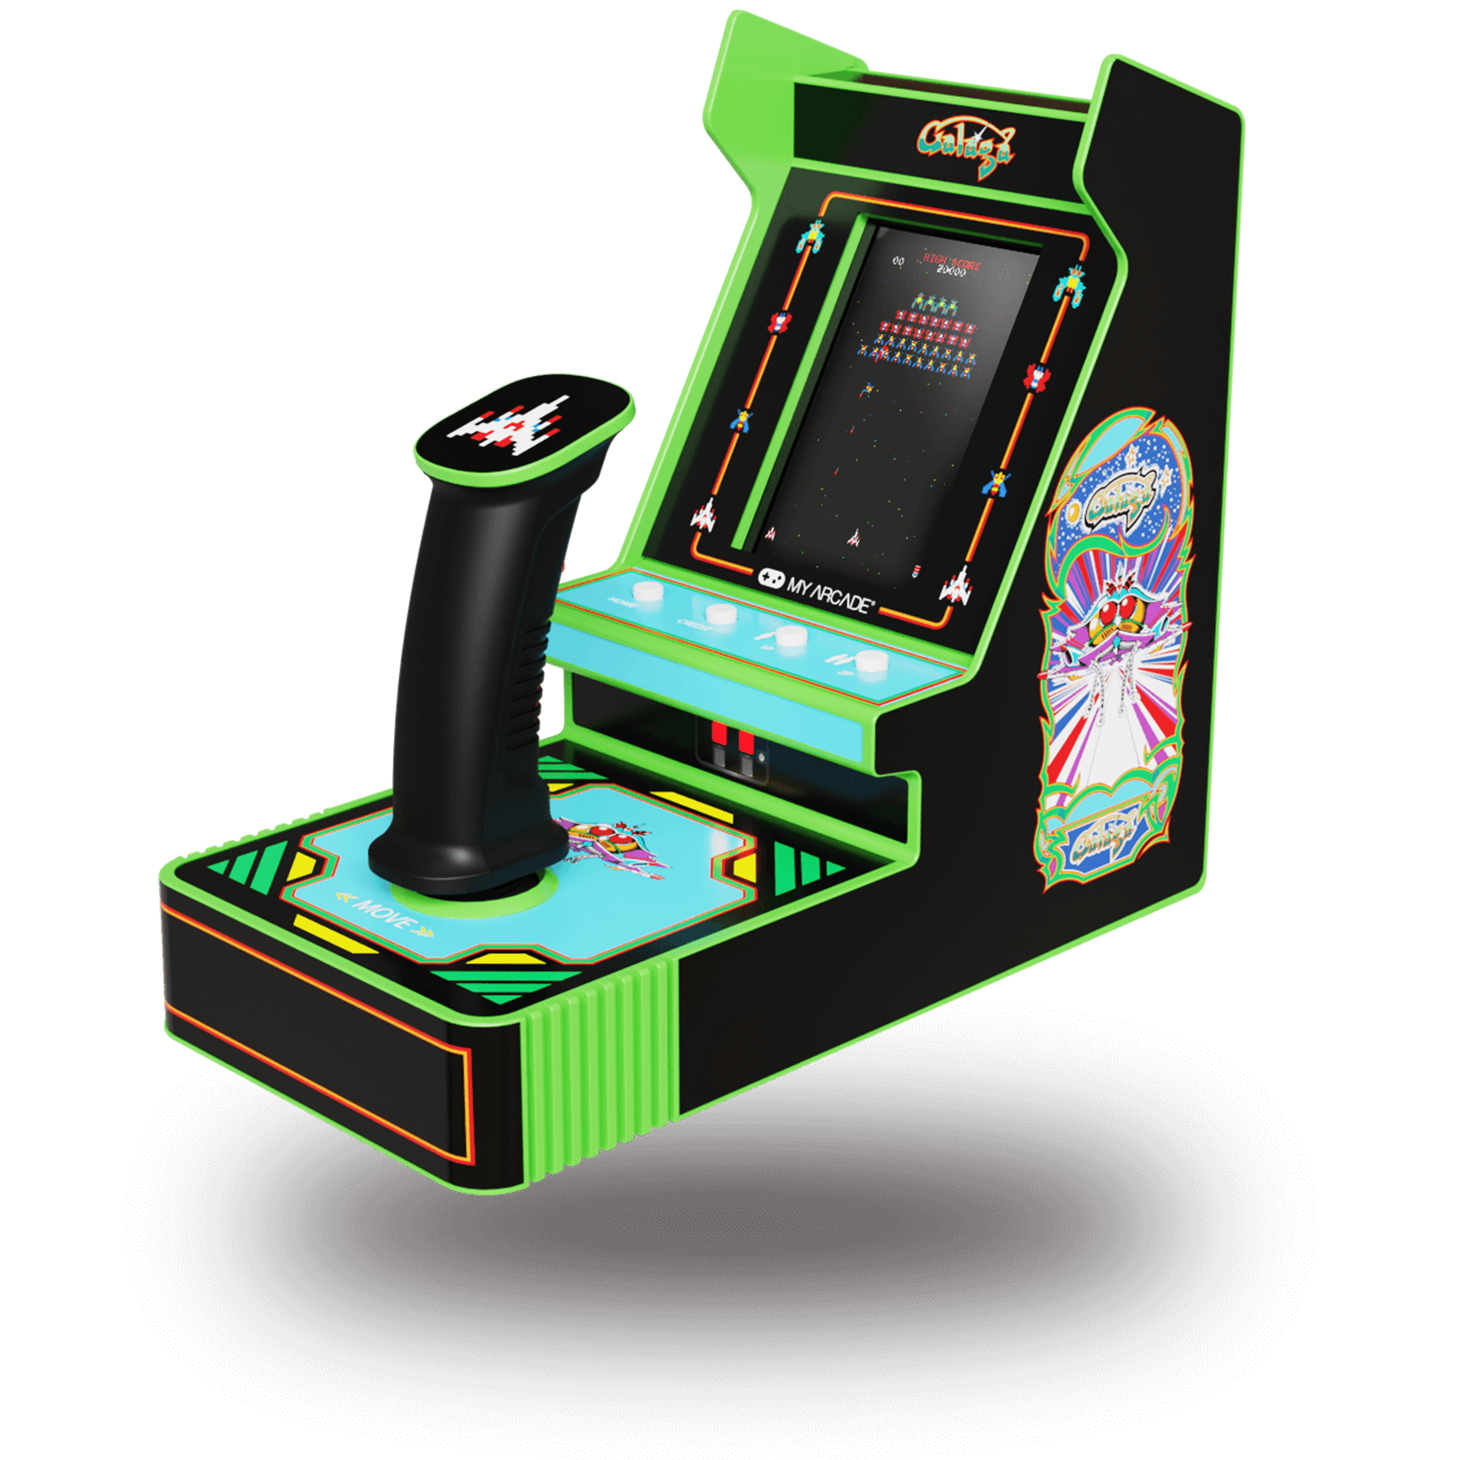 Mini Borne arcade GALAGA mais avec Maxi Stick ! mdr xD lol GalagaJoystickPlayerPro1_a663a799-3c9c-4916-82b4-a3762efe2d1f